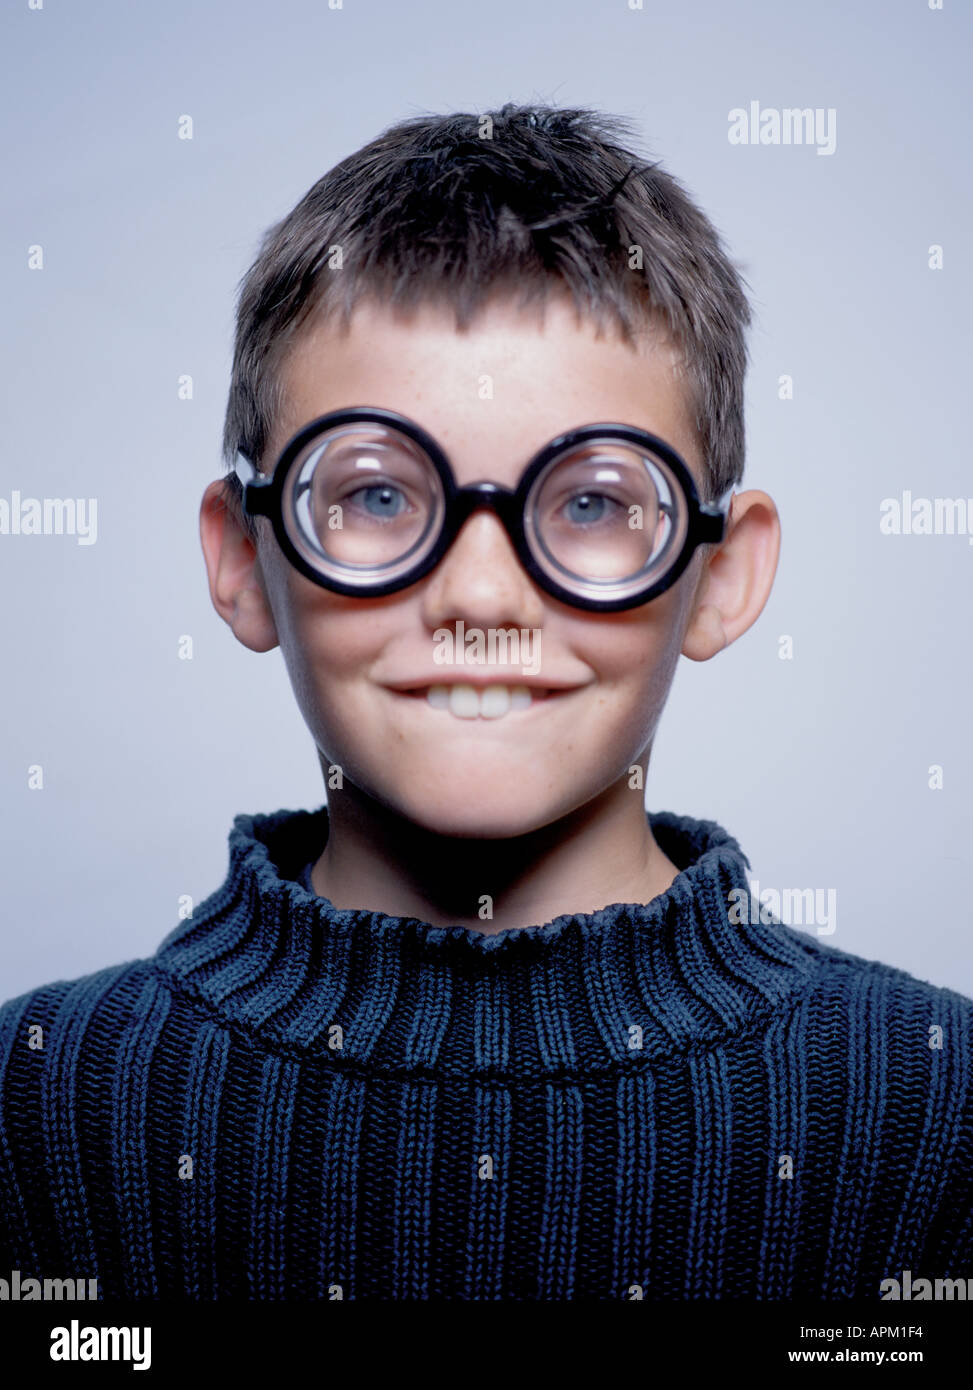 Porträt eines goofy jungen mit dicken Brille Stockfotografie - Alamy